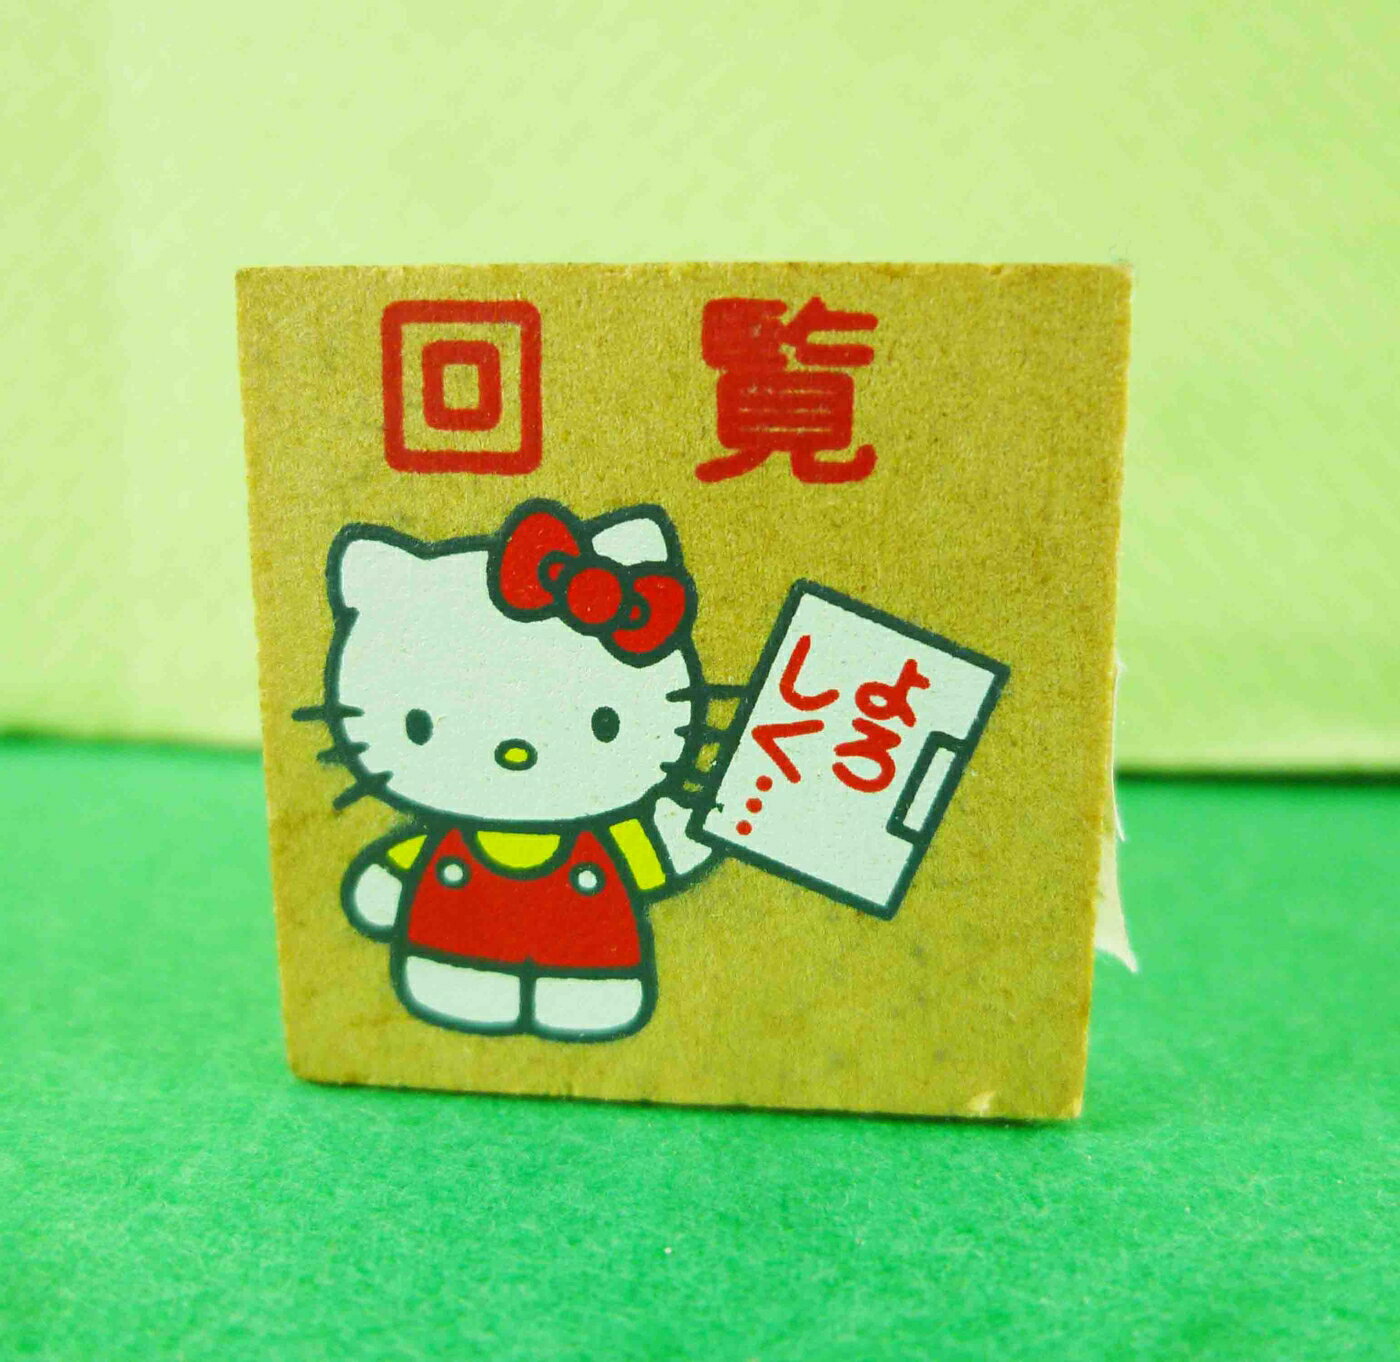 【震撼精品百貨】Hello Kitty 凱蒂貓 KITTY木製印章-回覽圖案 震撼日式精品百貨